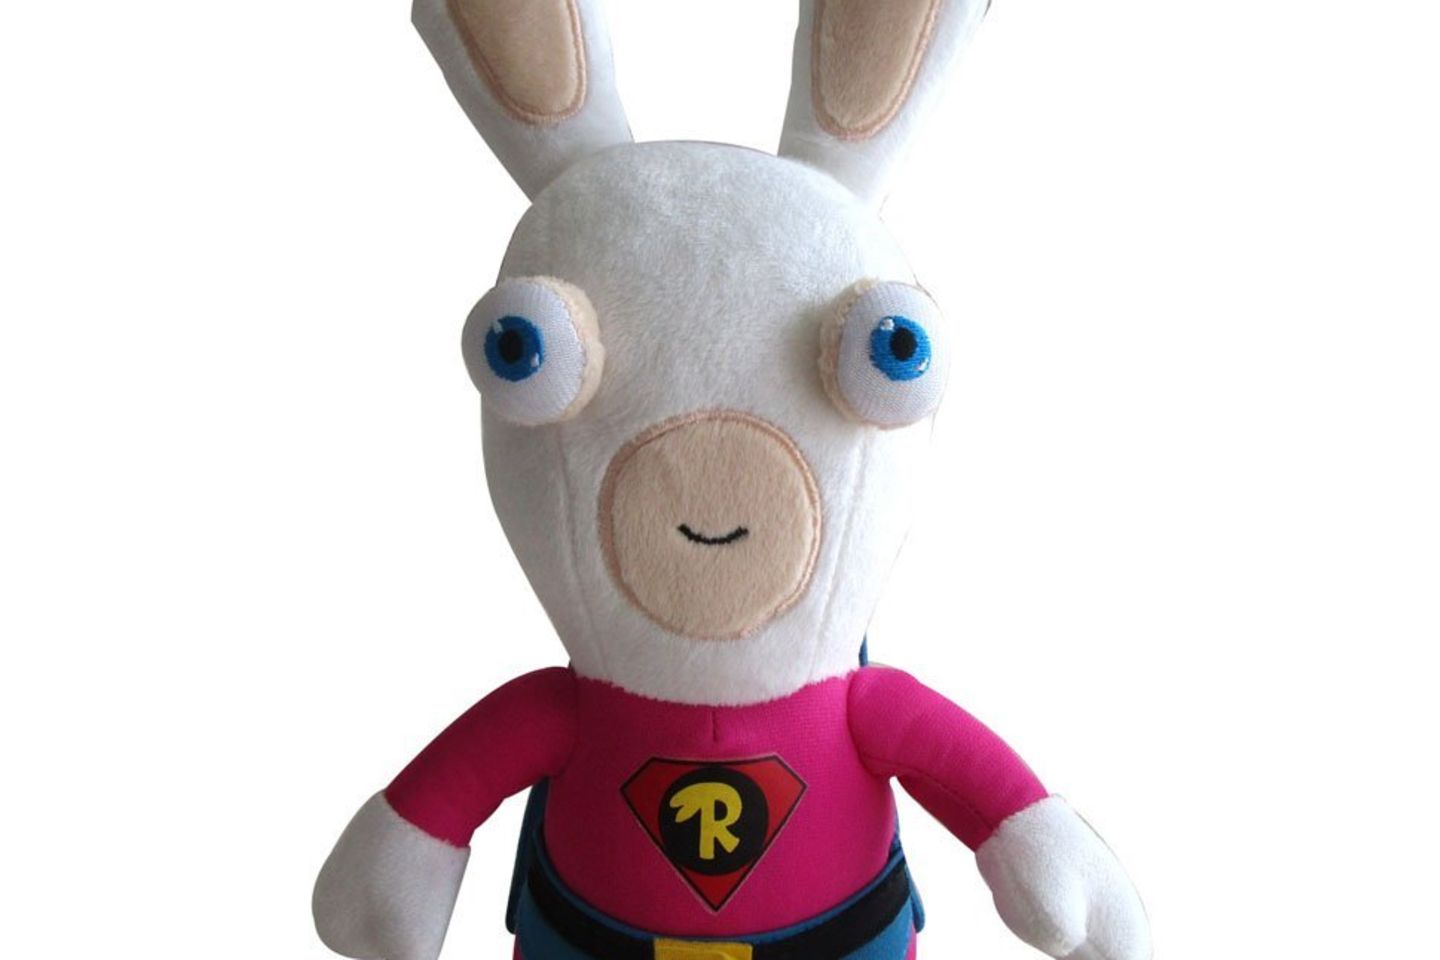 Dieser Hase als Superheld beschützt jedes Kind! Bekannt ist er aus dem Wii-Spiel "Raving-Rabbids".